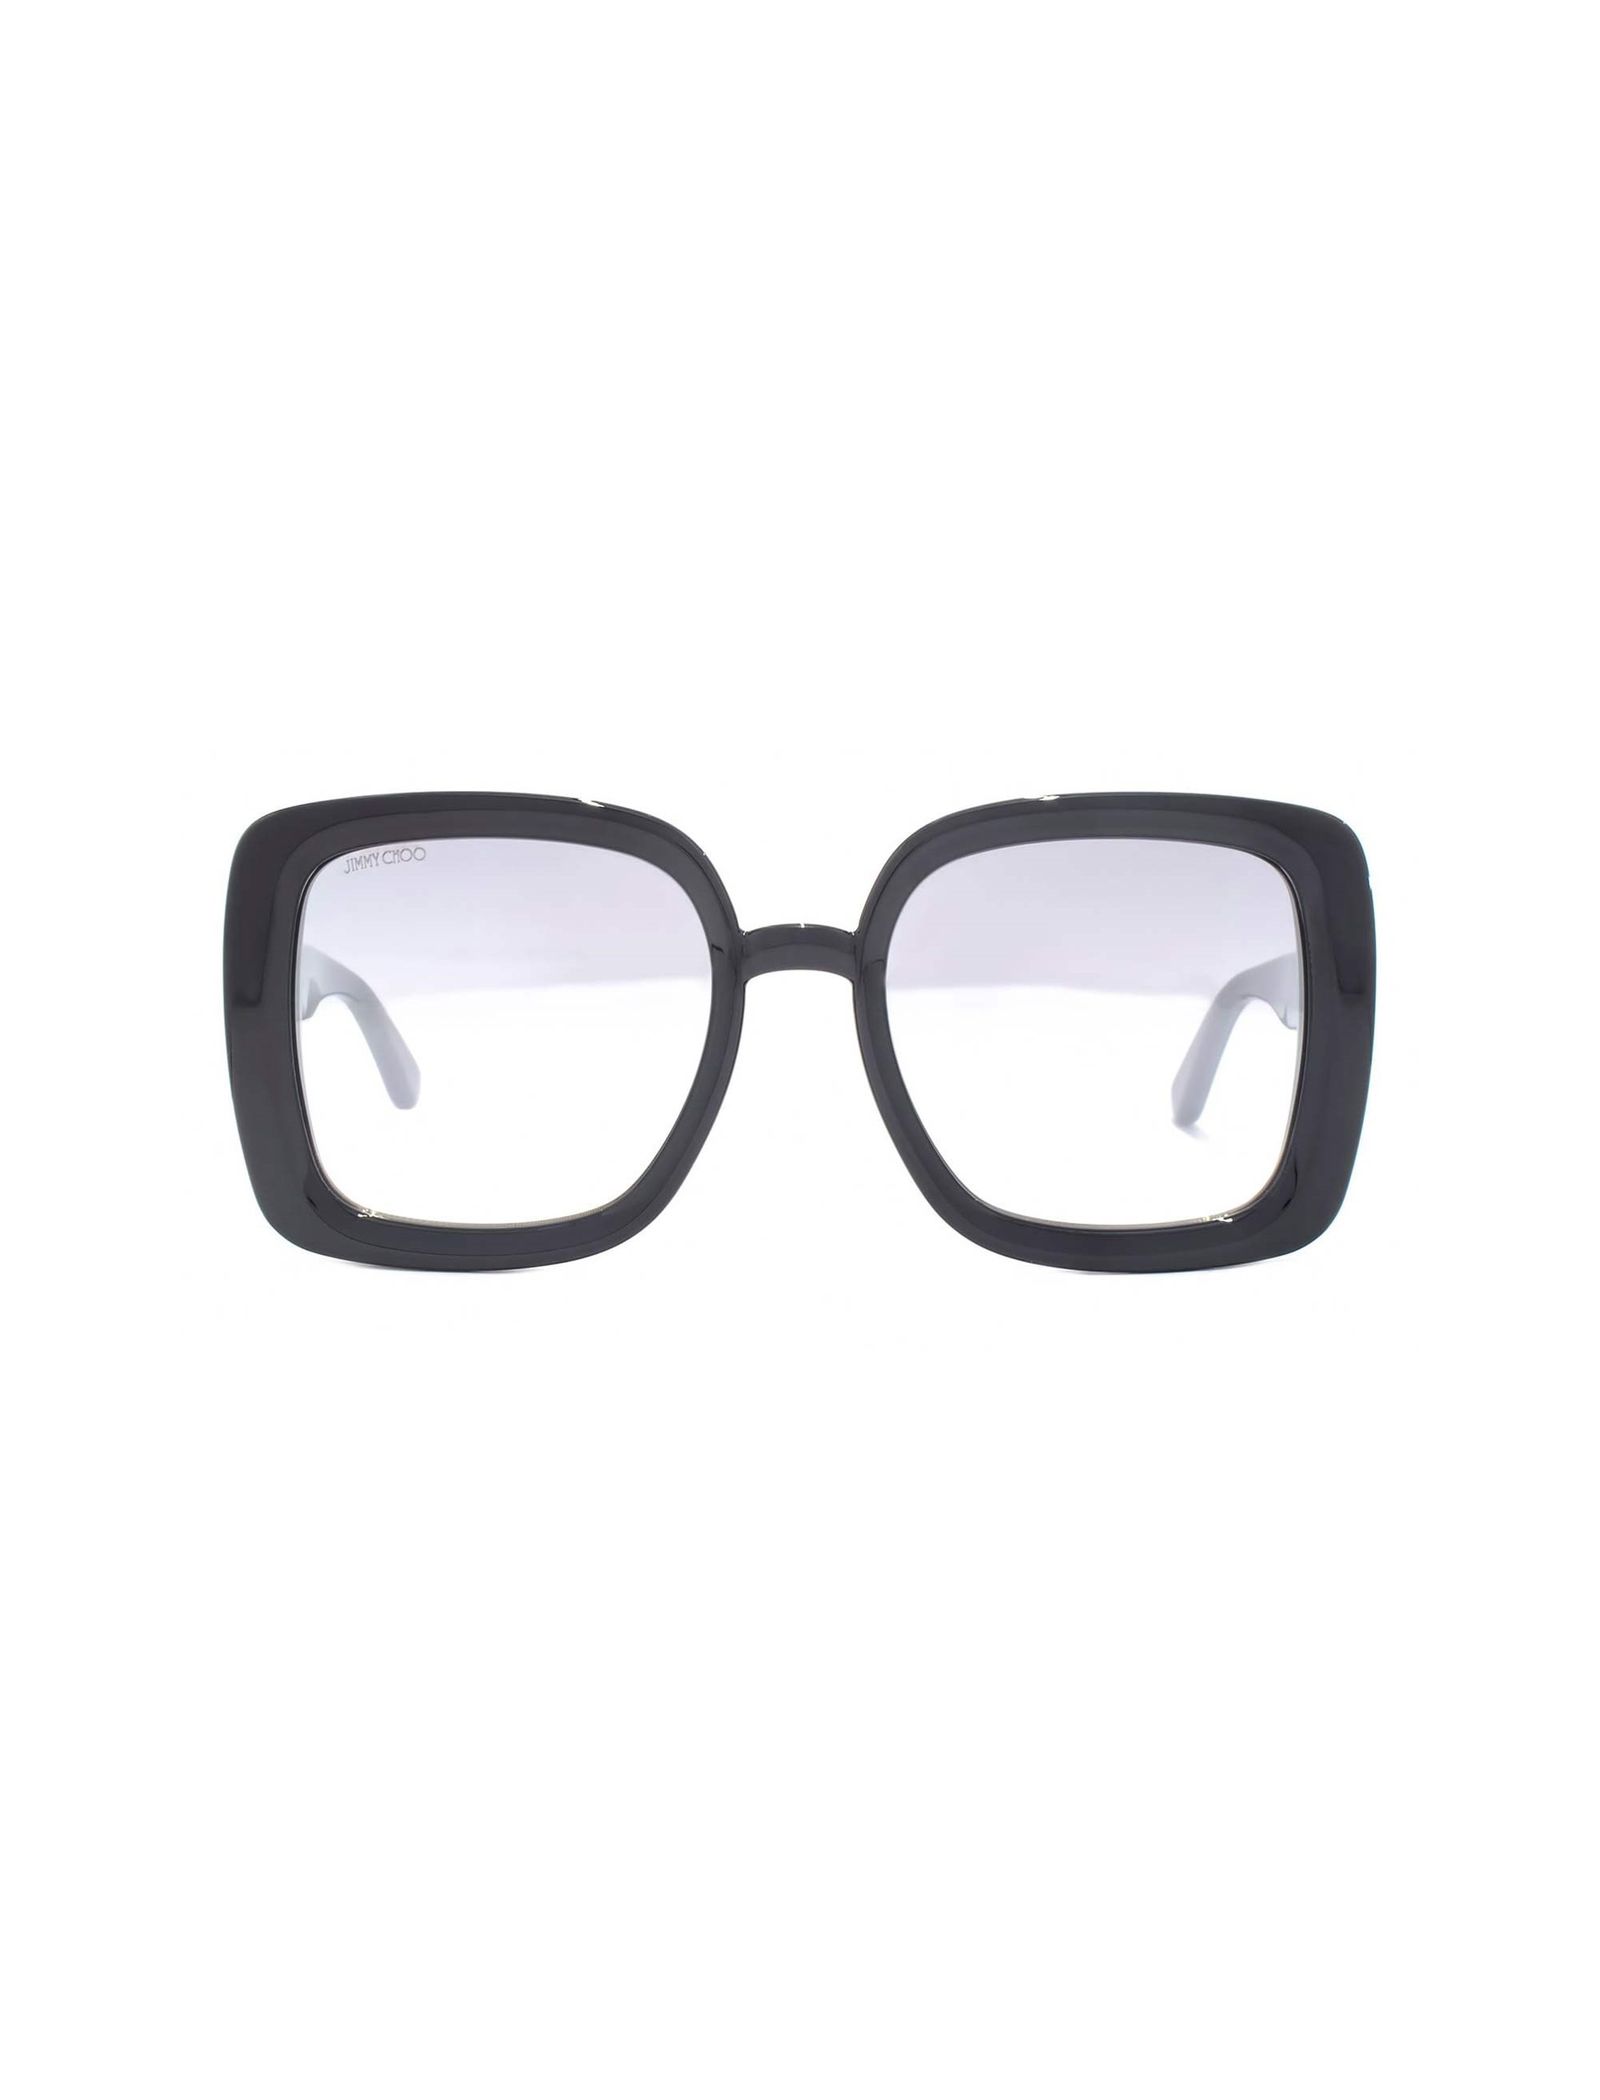 عینک آفتابی مربع بزرگسال - جیمی چو - مشکي - 1